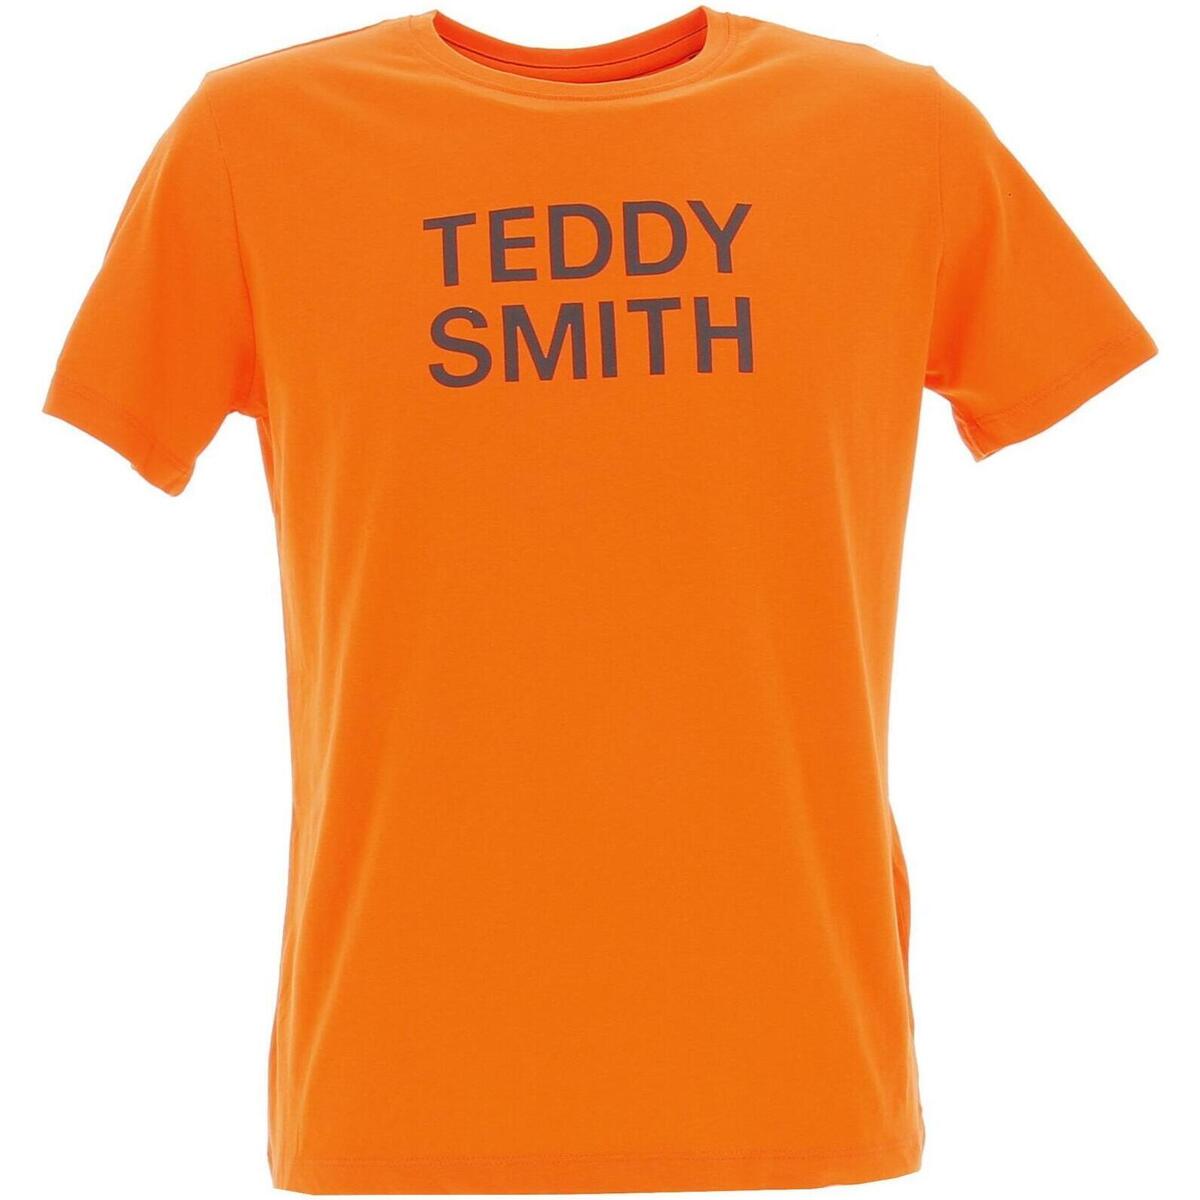 Teddy Smith Orange Ticlass 3 mc jr DFI8UsTM